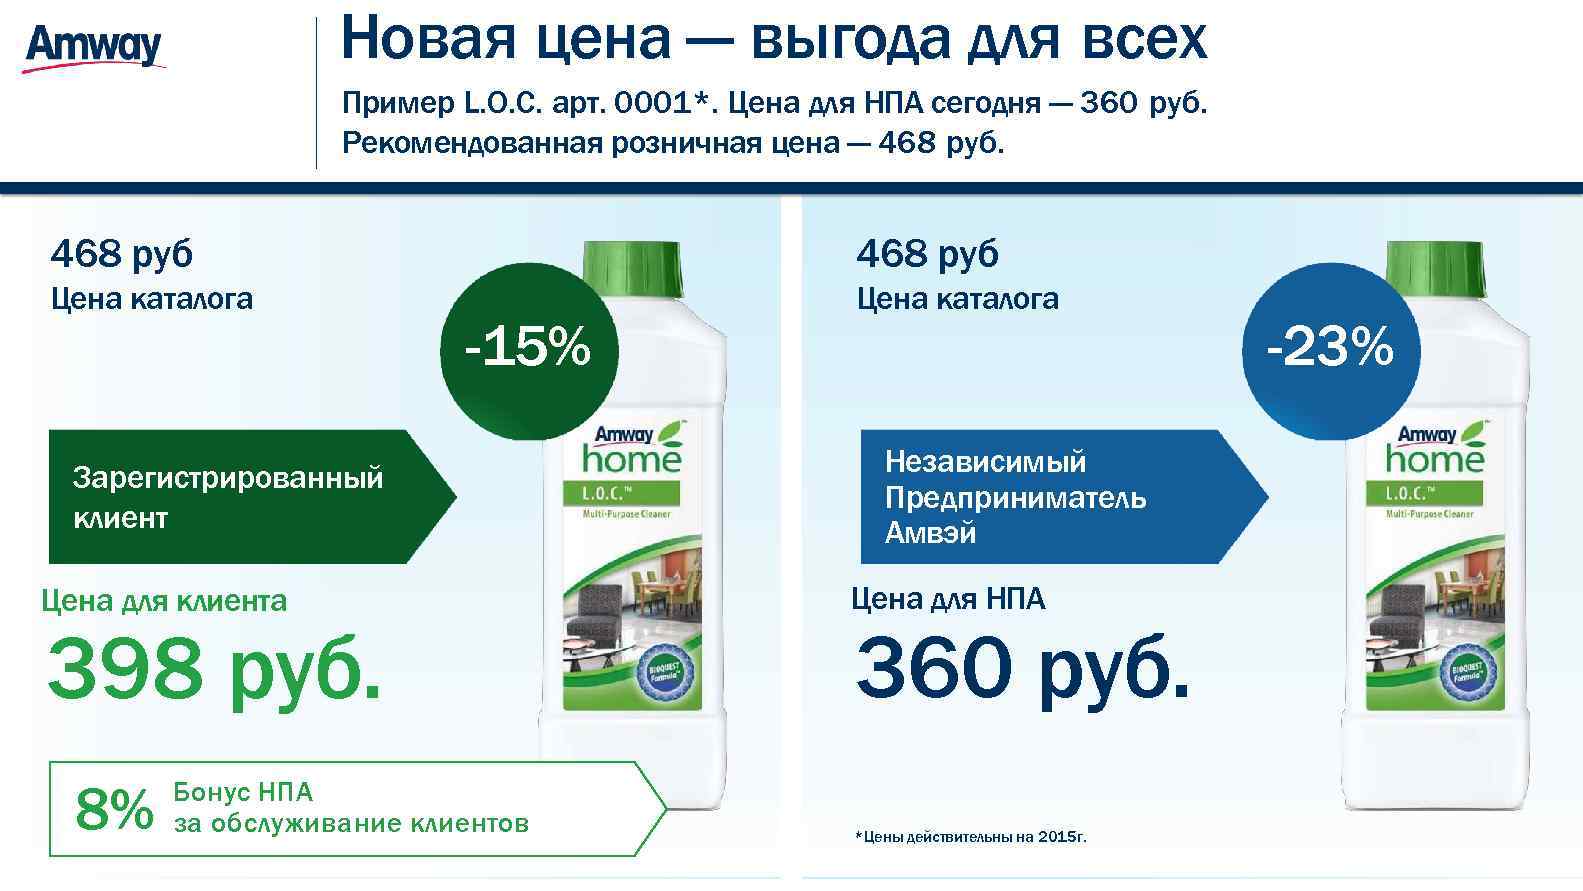 Озон цена в белорусских рублях. Амвей. Amway продукция. Продукция компании Амвей. Независимый предприниматель amway.